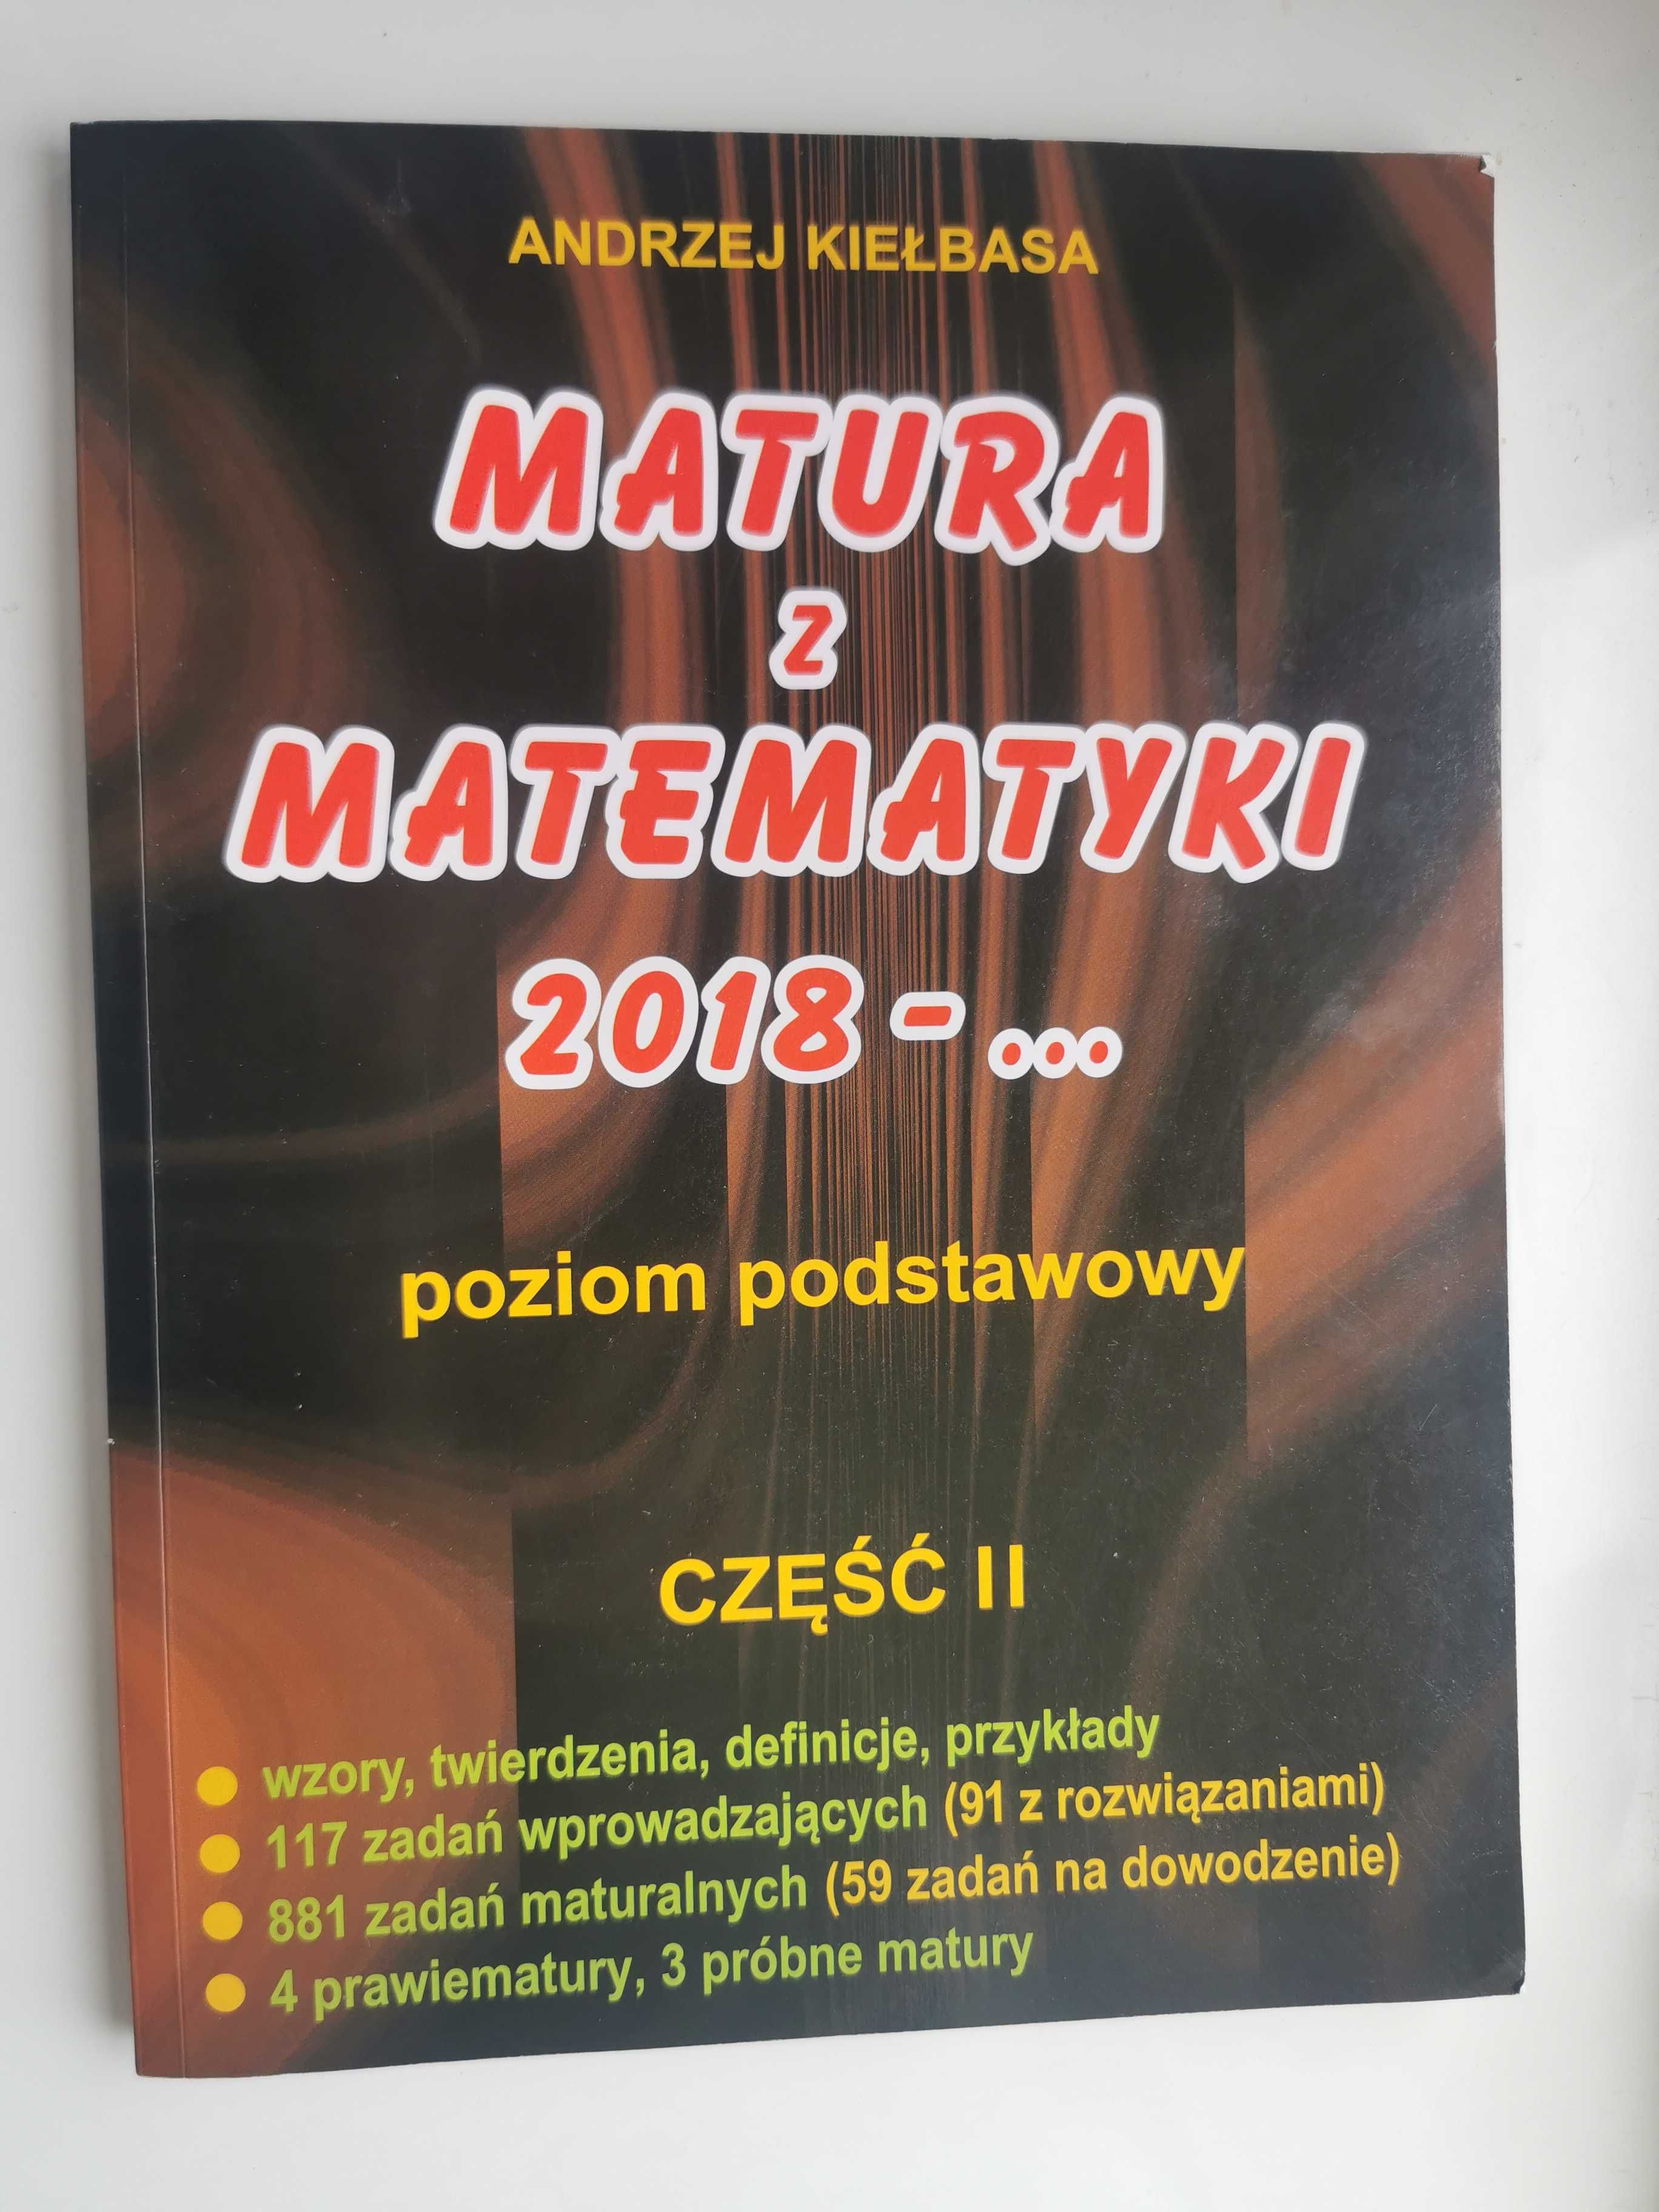 Matura z matematyki 2018-.. ; Część I i II ; Andrzej Kiełbasa